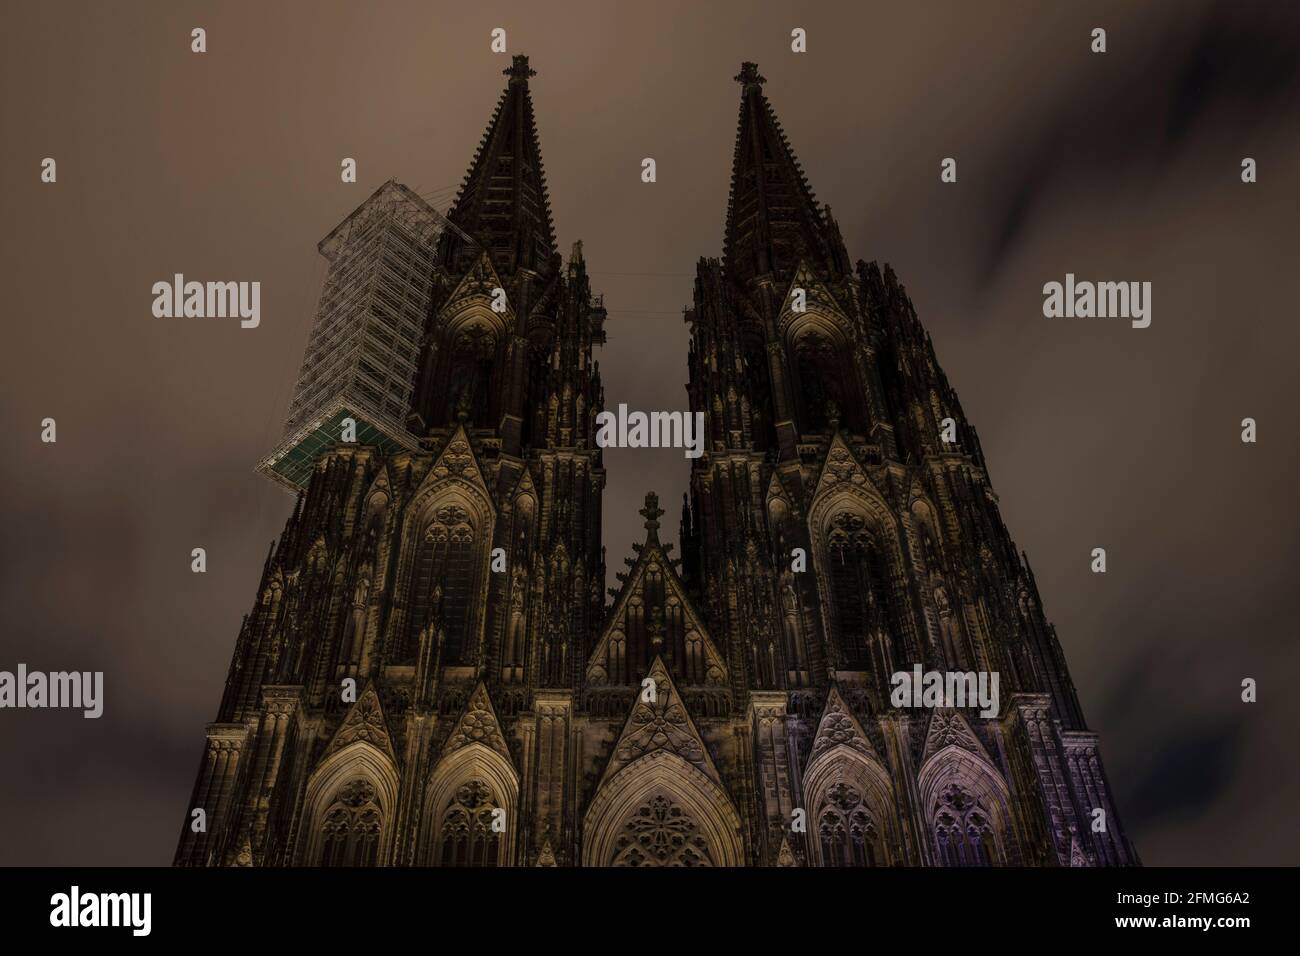 Coprifuoco dalle 21:00 durante il blocco della corona pandemia il 5 maggio. 2021. La cattedrale non è illuminata durante queste notti, Colonia, Germania. Ausgangssp Foto Stock